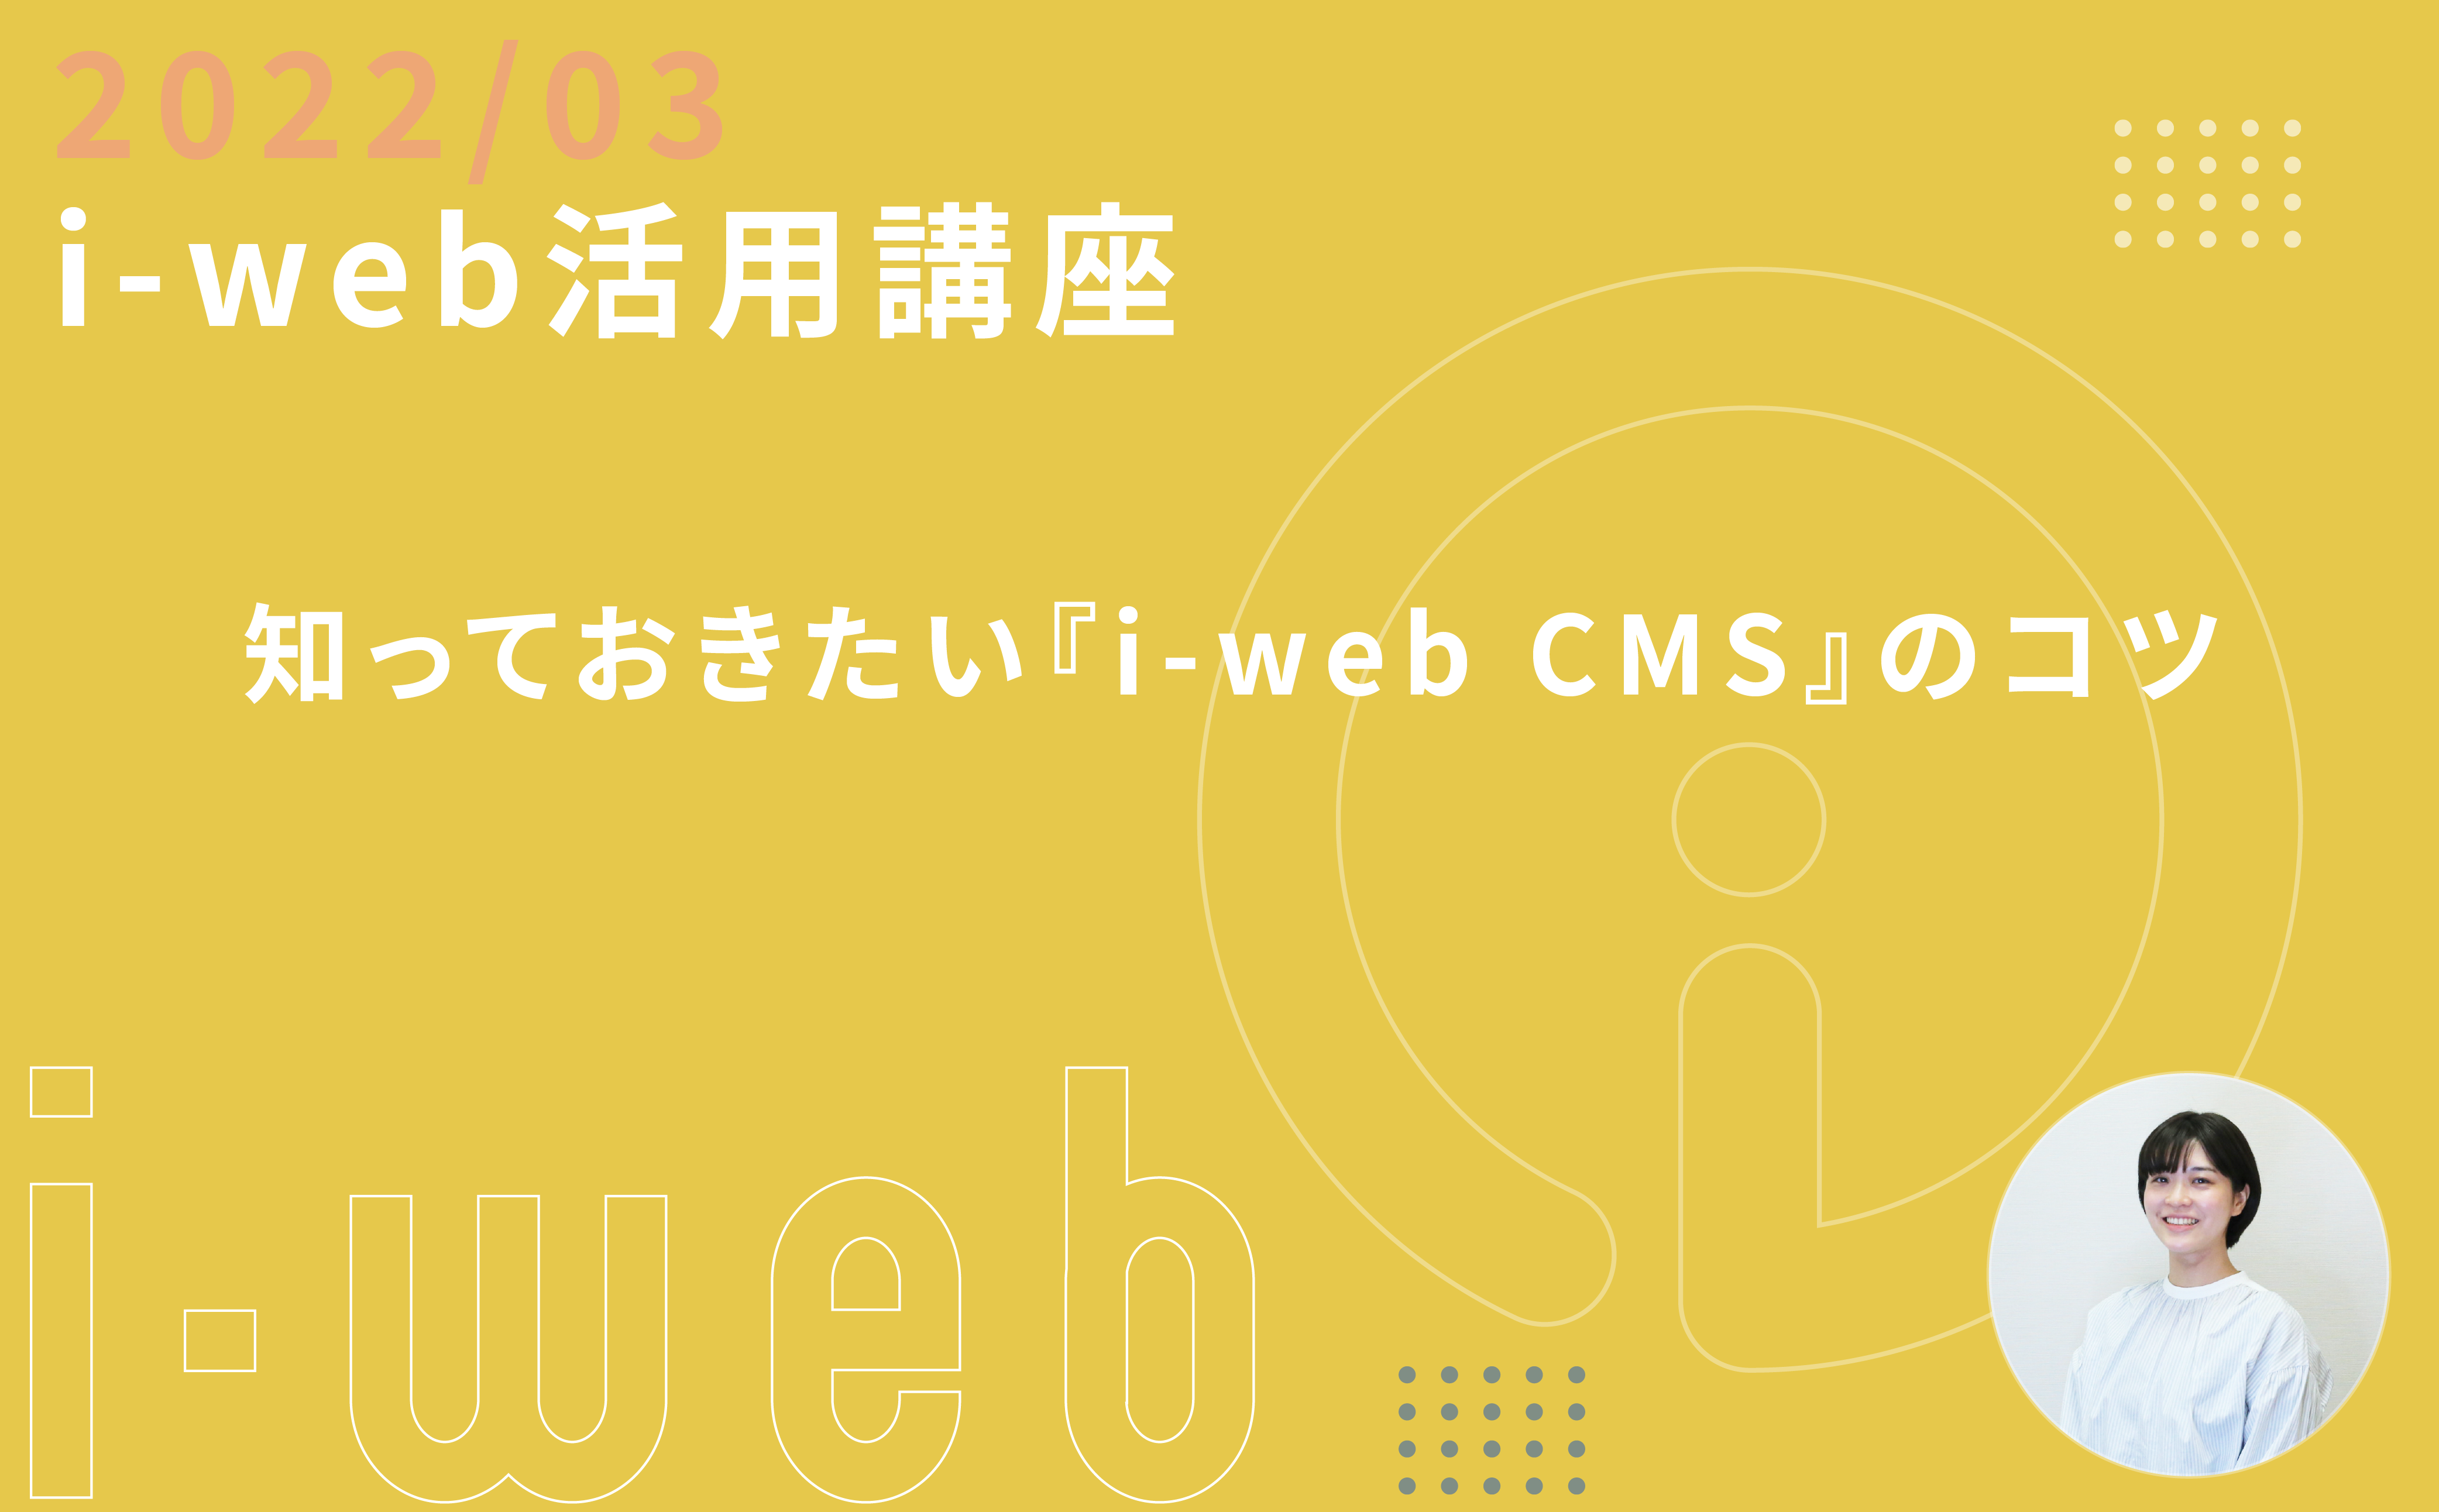 【i-web活用講座】知っておきたい『i-web CMS』のコツ